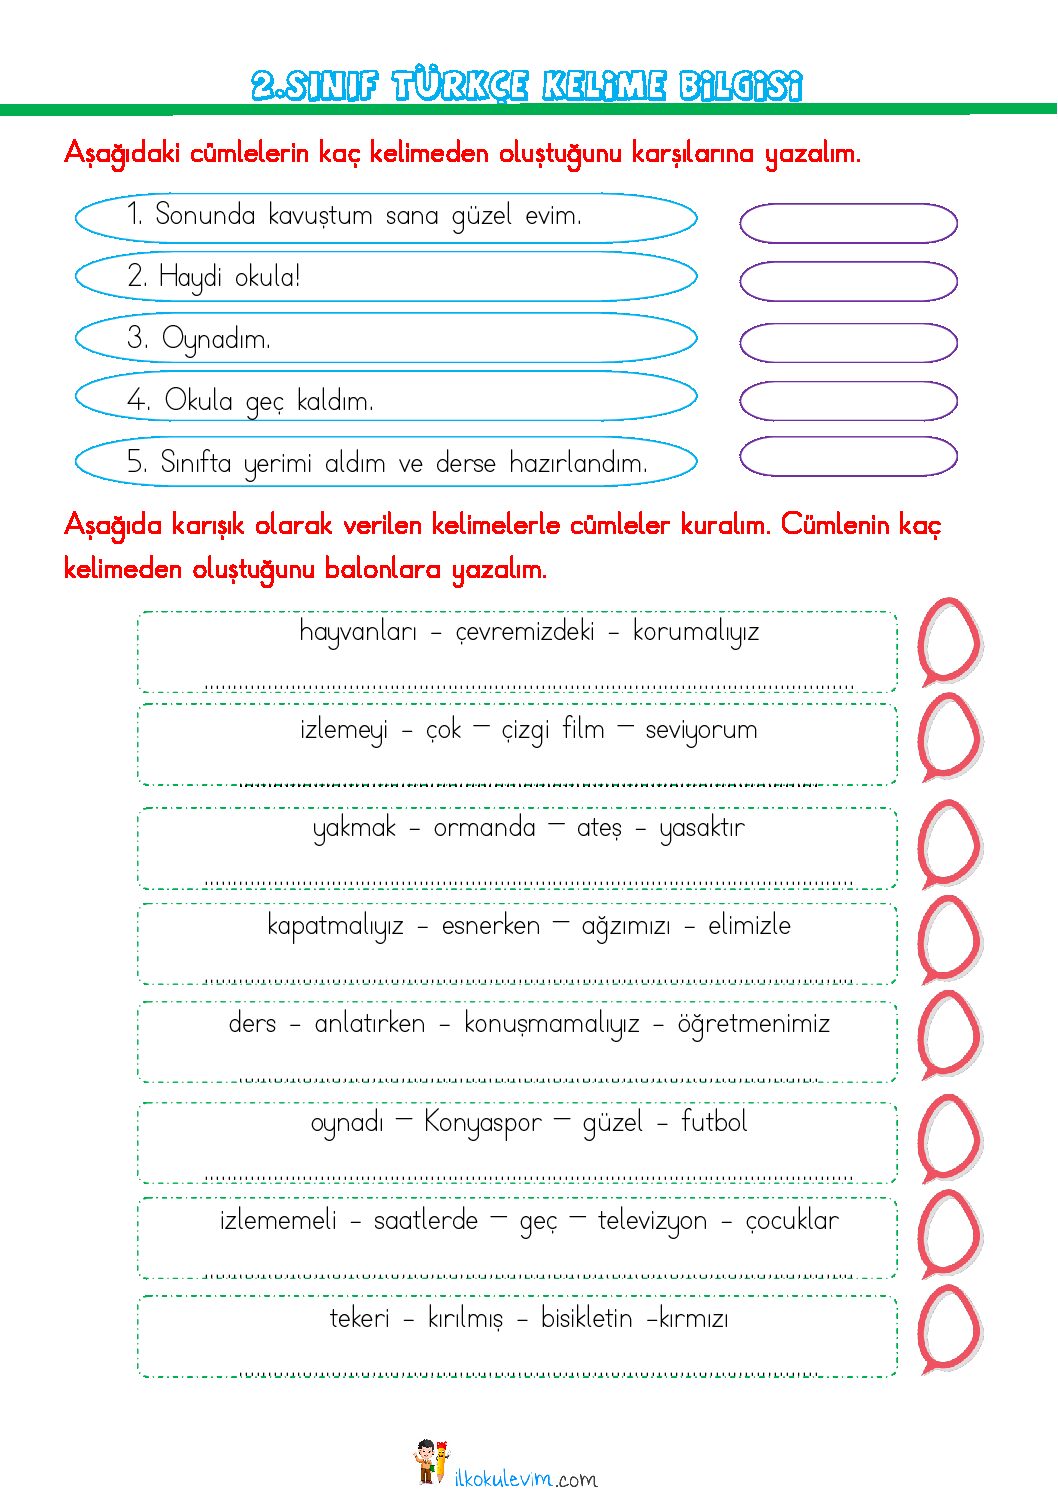 2 sinif turkce kelime bilgisi etkinligi 2 pdf